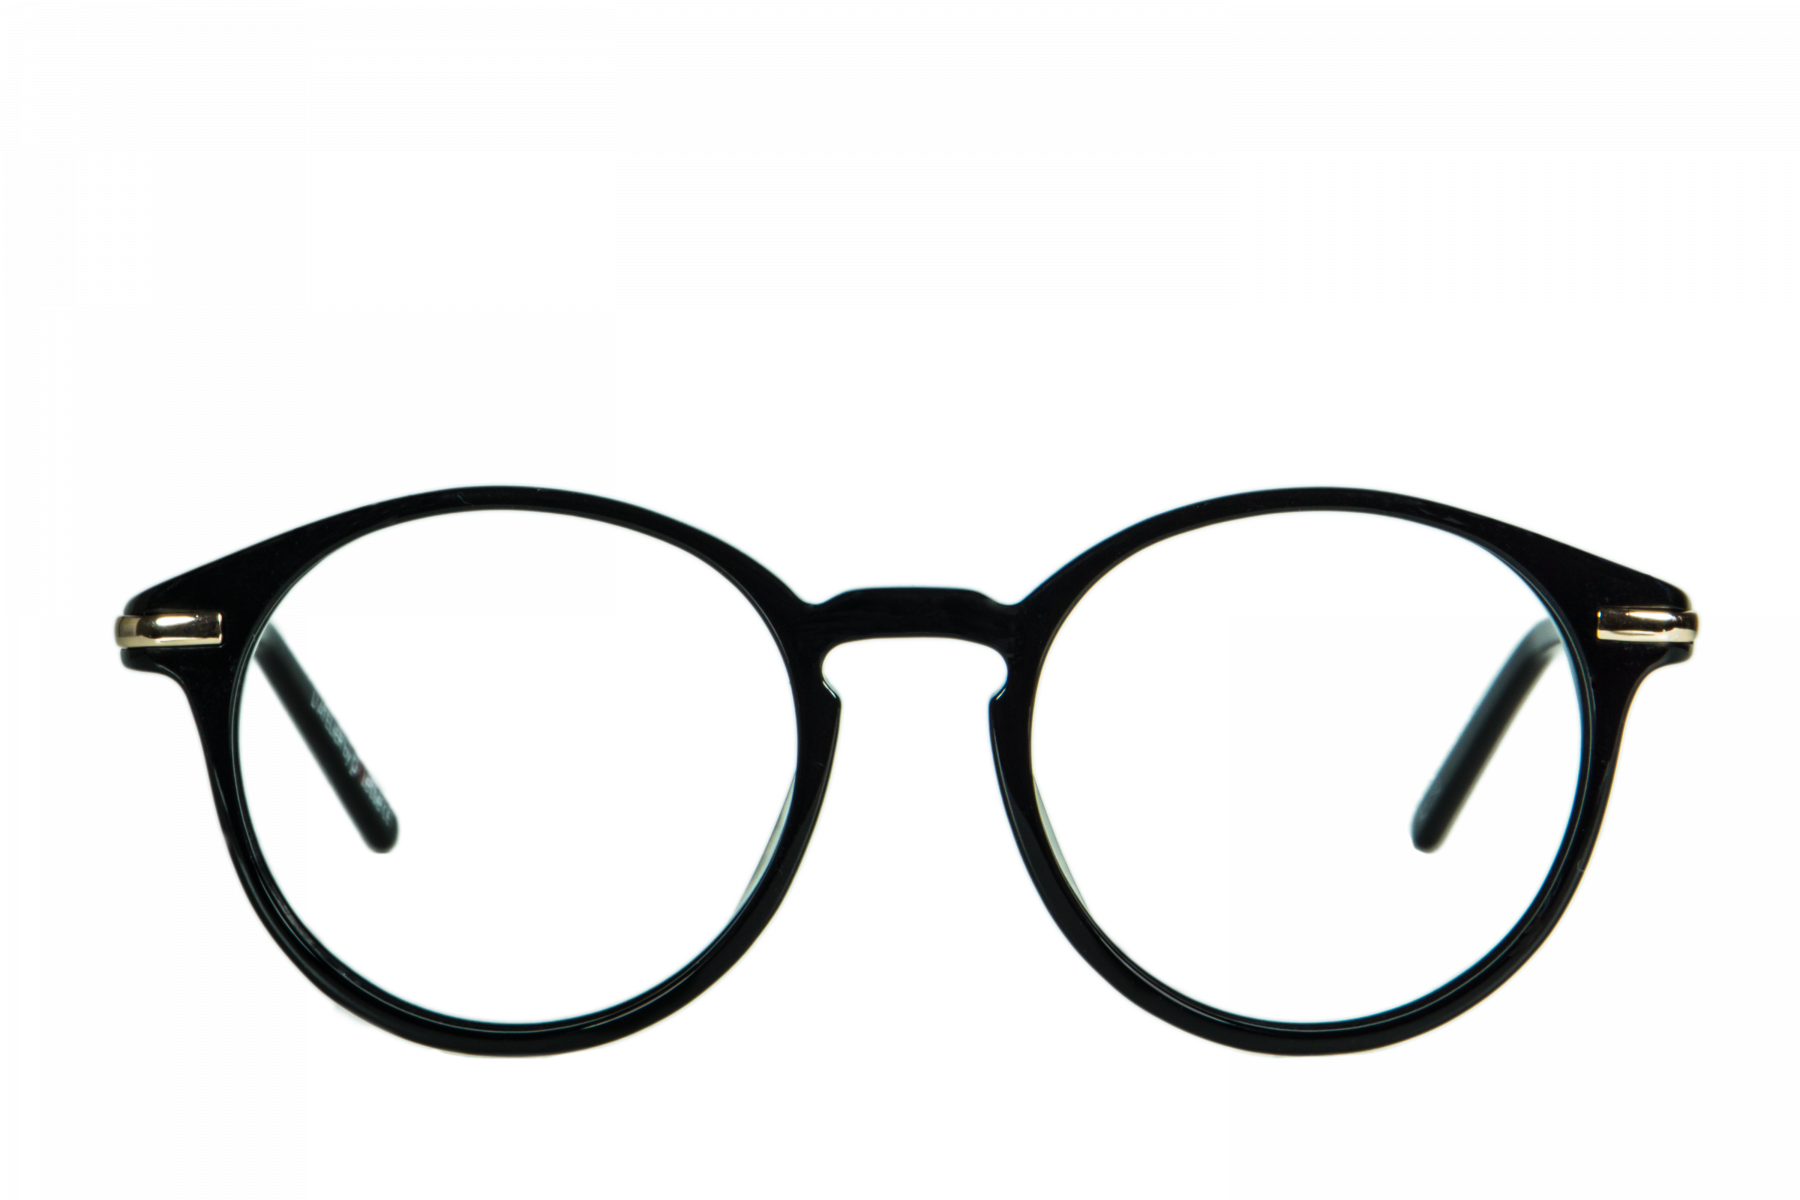 แว่นตา